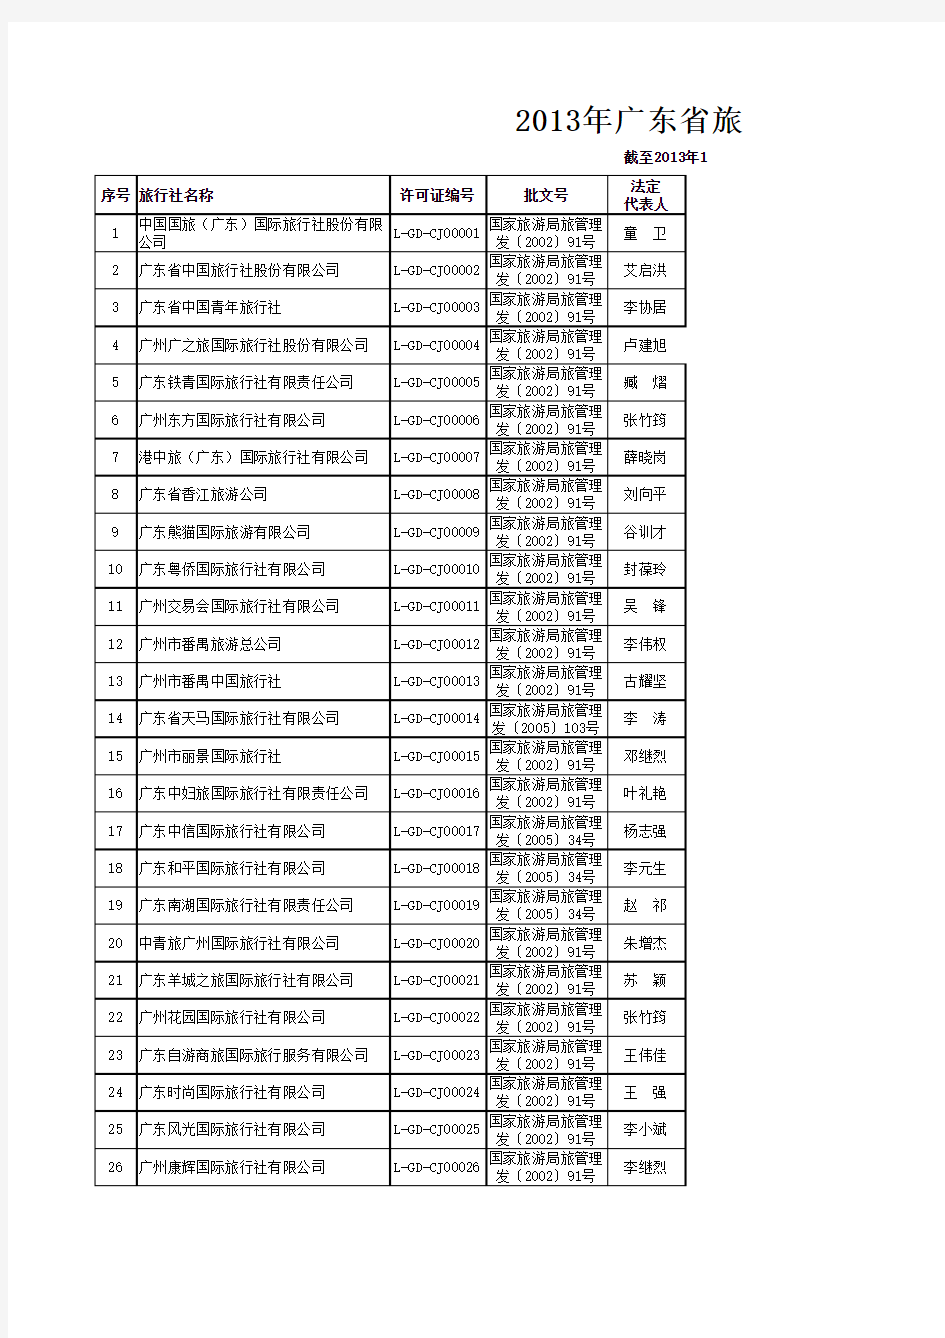 2014年最新版-广东省旅行社名录大全